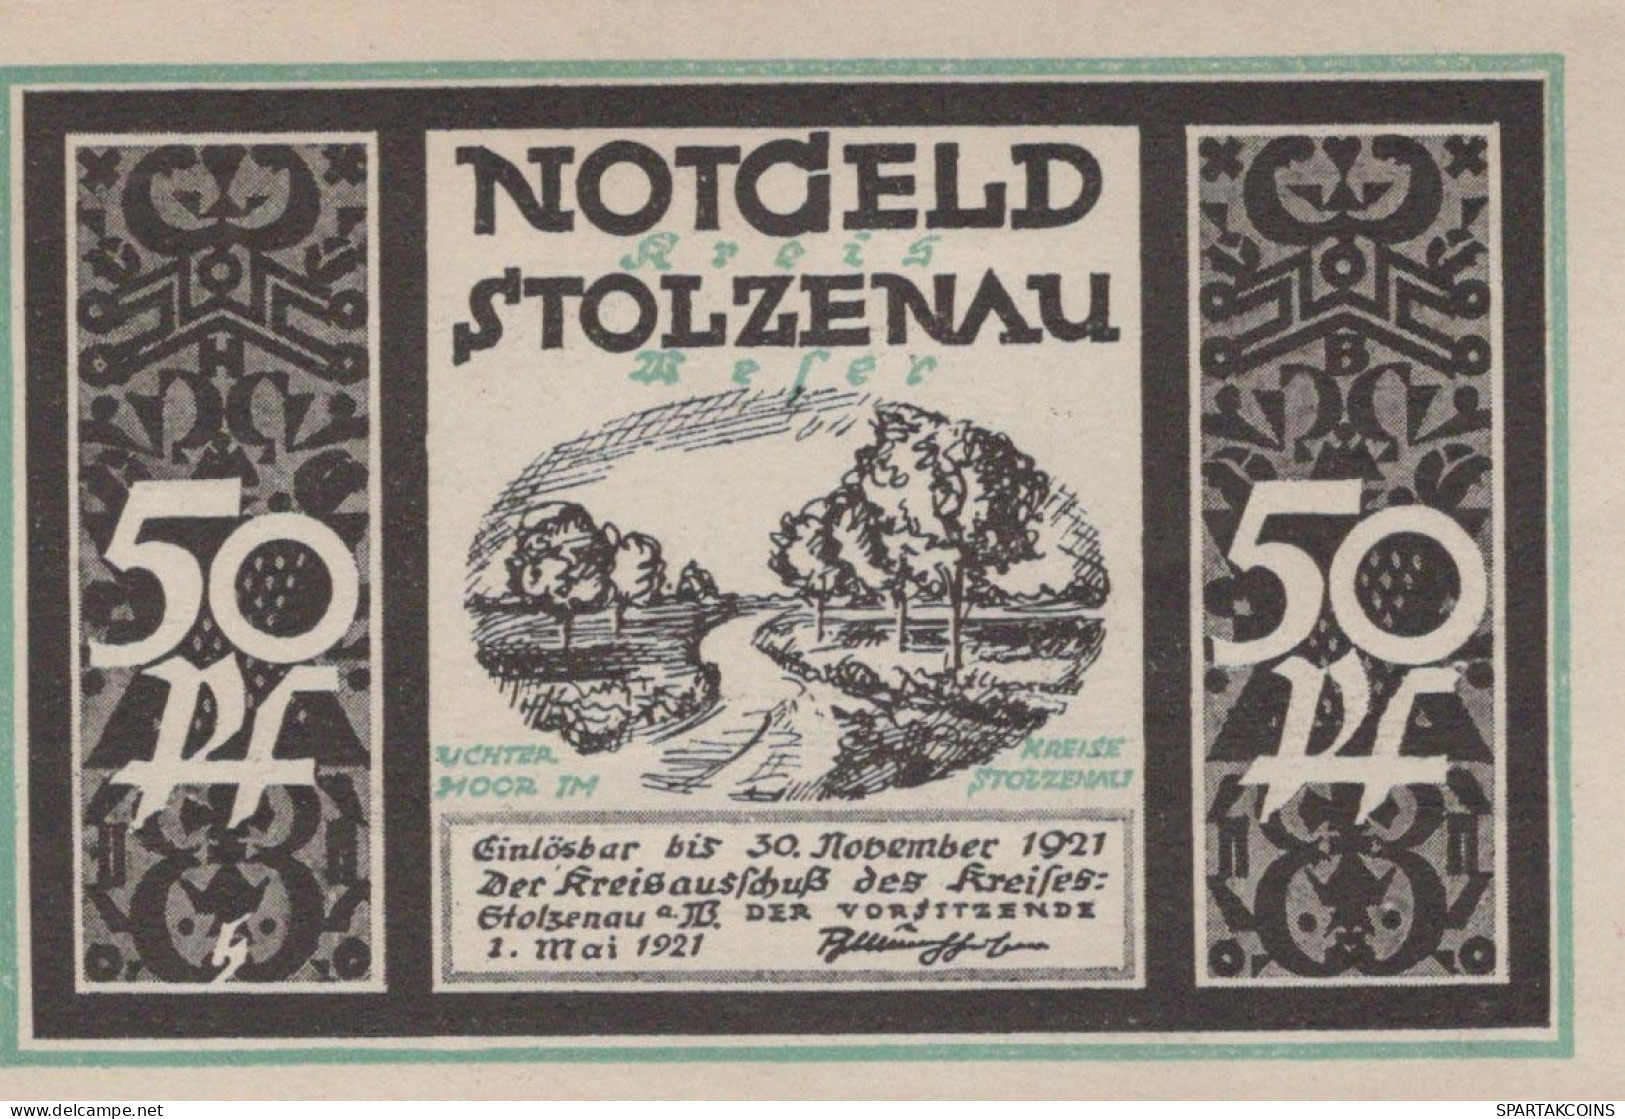 50 PFENNIG 1921 Stadt STOLZENAU Hanover DEUTSCHLAND Notgeld Banknote #PF927 - [11] Local Banknote Issues